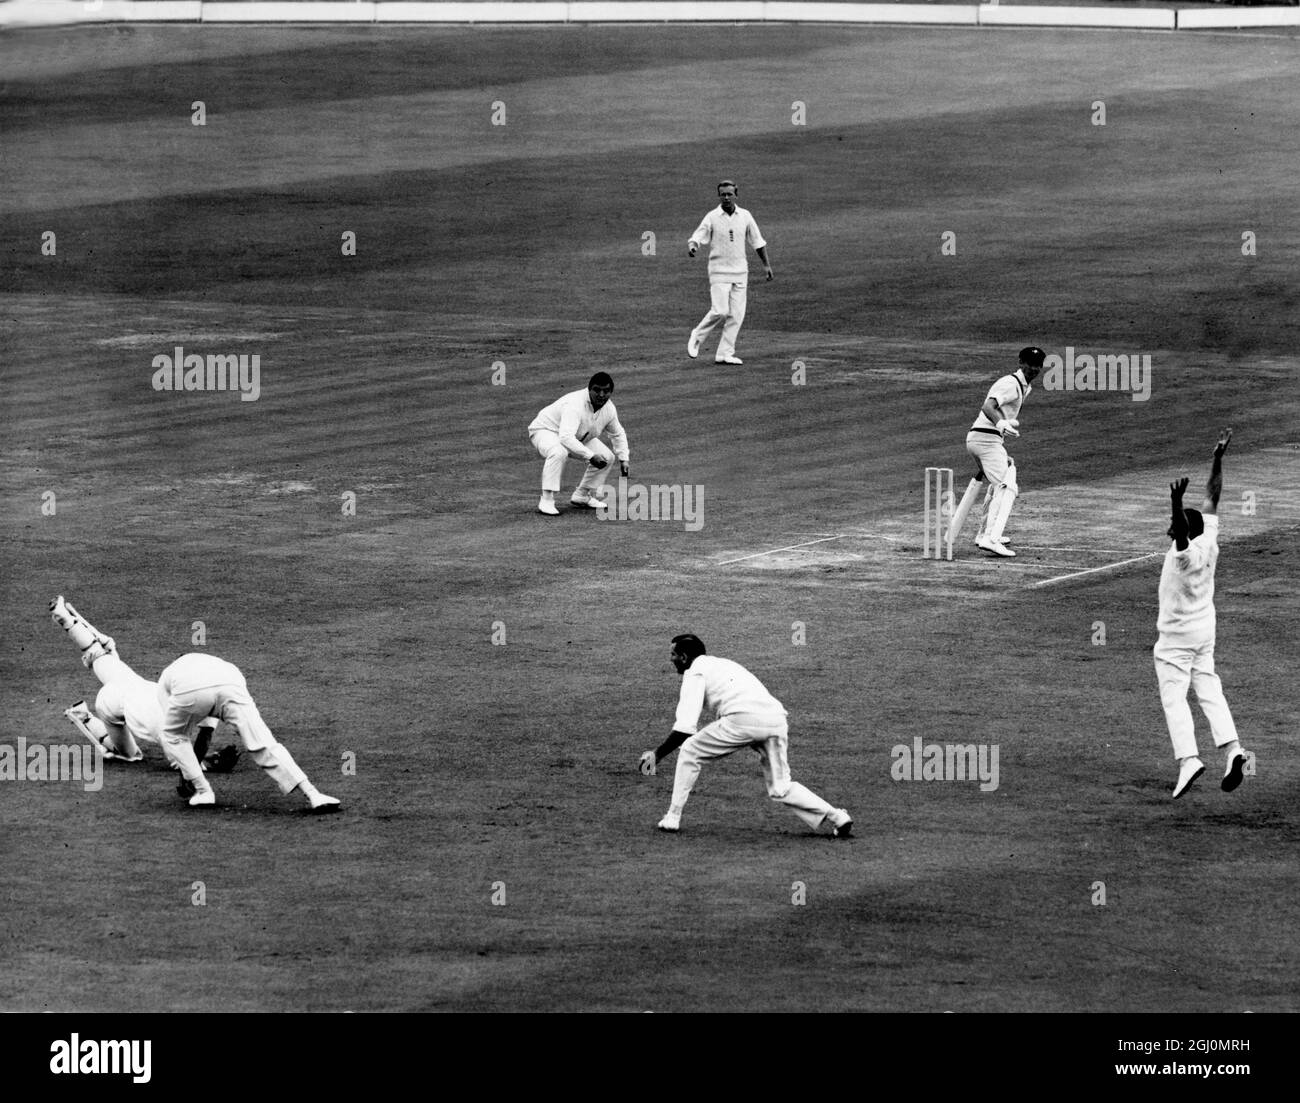 Cricket bei Lords 2. Testspiel England gegen Australien Ashes-Serie Fourth Day I R Redpath (Australien) ist gut beim Ausrutschen von M C Cowdrey gefangen, aus dem Bowling von D J Brown für 4 Durchläufe. Dieser Fang von Cowdrey, seinen 100., wird als Weltrekord angenommen. Juni 1968 Stockfoto